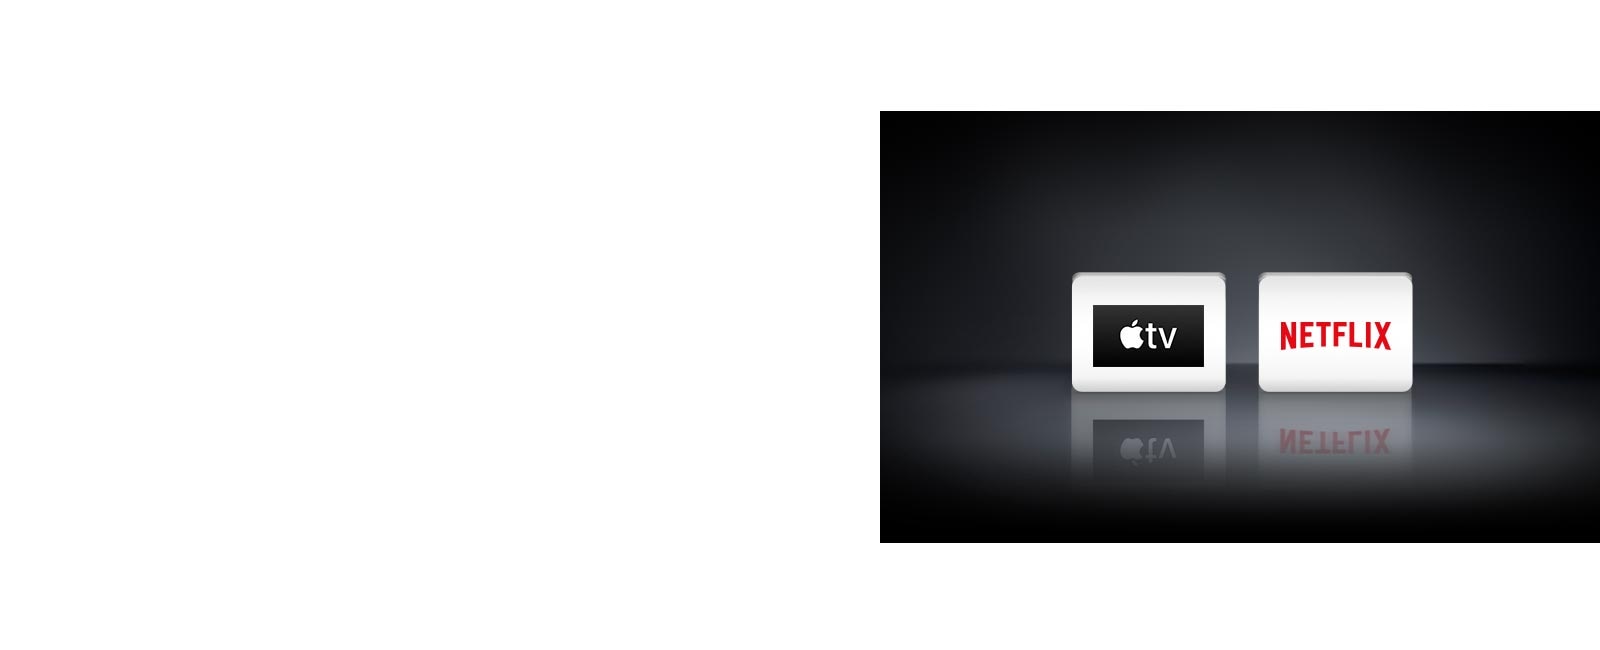 שני סמלי לוגו: Apple TV ו-Netflix